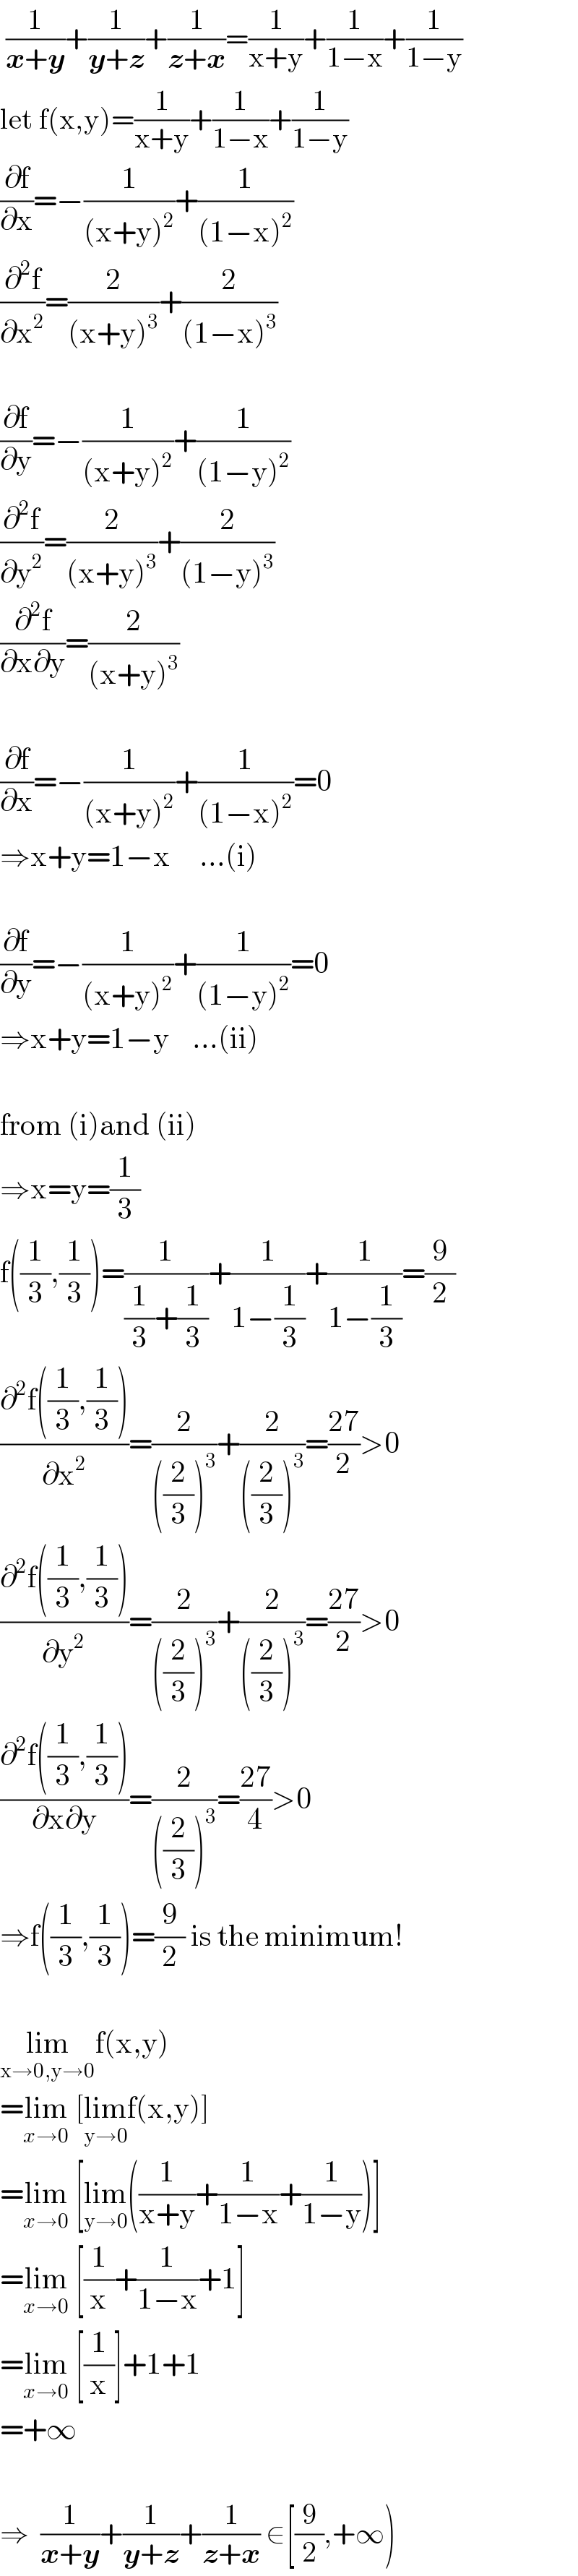  (1/(x+y))+(1/(y+z))+(1/(z+x))=(1/(x+y))+(1/(1−x))+(1/(1−y))  let f(x,y)=(1/(x+y))+(1/(1−x))+(1/(1−y))  (∂f/∂x)=−(1/((x+y)^2 ))+(1/((1−x)^2 ))  (∂^2 f/∂x^2 )=(2/((x+y)^3 ))+(2/((1−x)^3 ))    (∂f/∂y)=−(1/((x+y)^2 ))+(1/((1−y)^2 ))  (∂^2 f/∂y^2 )=(2/((x+y)^3 ))+(2/((1−y)^3 ))  (∂^2 f/(∂x∂y))=(2/((x+y)^3 ))    (∂f/∂x)=−(1/((x+y)^2 ))+(1/((1−x)^2 ))=0  ⇒x+y=1−x     ...(i)    (∂f/∂y)=−(1/((x+y)^2 ))+(1/((1−y)^2 ))=0  ⇒x+y=1−y    ...(ii)    from (i)and (ii)  ⇒x=y=(1/3)  f((1/3),(1/3))=(1/((1/3)+(1/3)))+(1/(1−(1/3)))+(1/(1−(1/3)))=(9/2)  ((∂^2 f((1/3),(1/3)))/∂x^2 )=(2/(((2/3))^3 ))+(2/(((2/3))^3 ))=((27)/2)>0  ((∂^2 f((1/3),(1/3)))/∂y^2 )=(2/(((2/3))^3 ))+(2/(((2/3))^3 ))=((27)/2)>0  ((∂^2 f((1/3),(1/3)))/(∂x∂y))=(2/(((2/3))^3 ))=((27)/4)>0  ⇒f((1/3),(1/3))=(9/2) is the minimum!    lim_(x→0,y→0) f(x,y)  =lim_(x→0)  [lim_(y→0) f(x,y)]  =lim_(x→0)  [lim_(y→0) ((1/(x+y))+(1/(1−x))+(1/(1−y)))]  =lim_(x→0)  [(1/x)+(1/(1−x))+1]  =lim_(x→0)  [(1/x)]+1+1  =+∞    ⇒  (1/(x+y))+(1/(y+z))+(1/(z+x)) ∈[(9/2),+∞)  